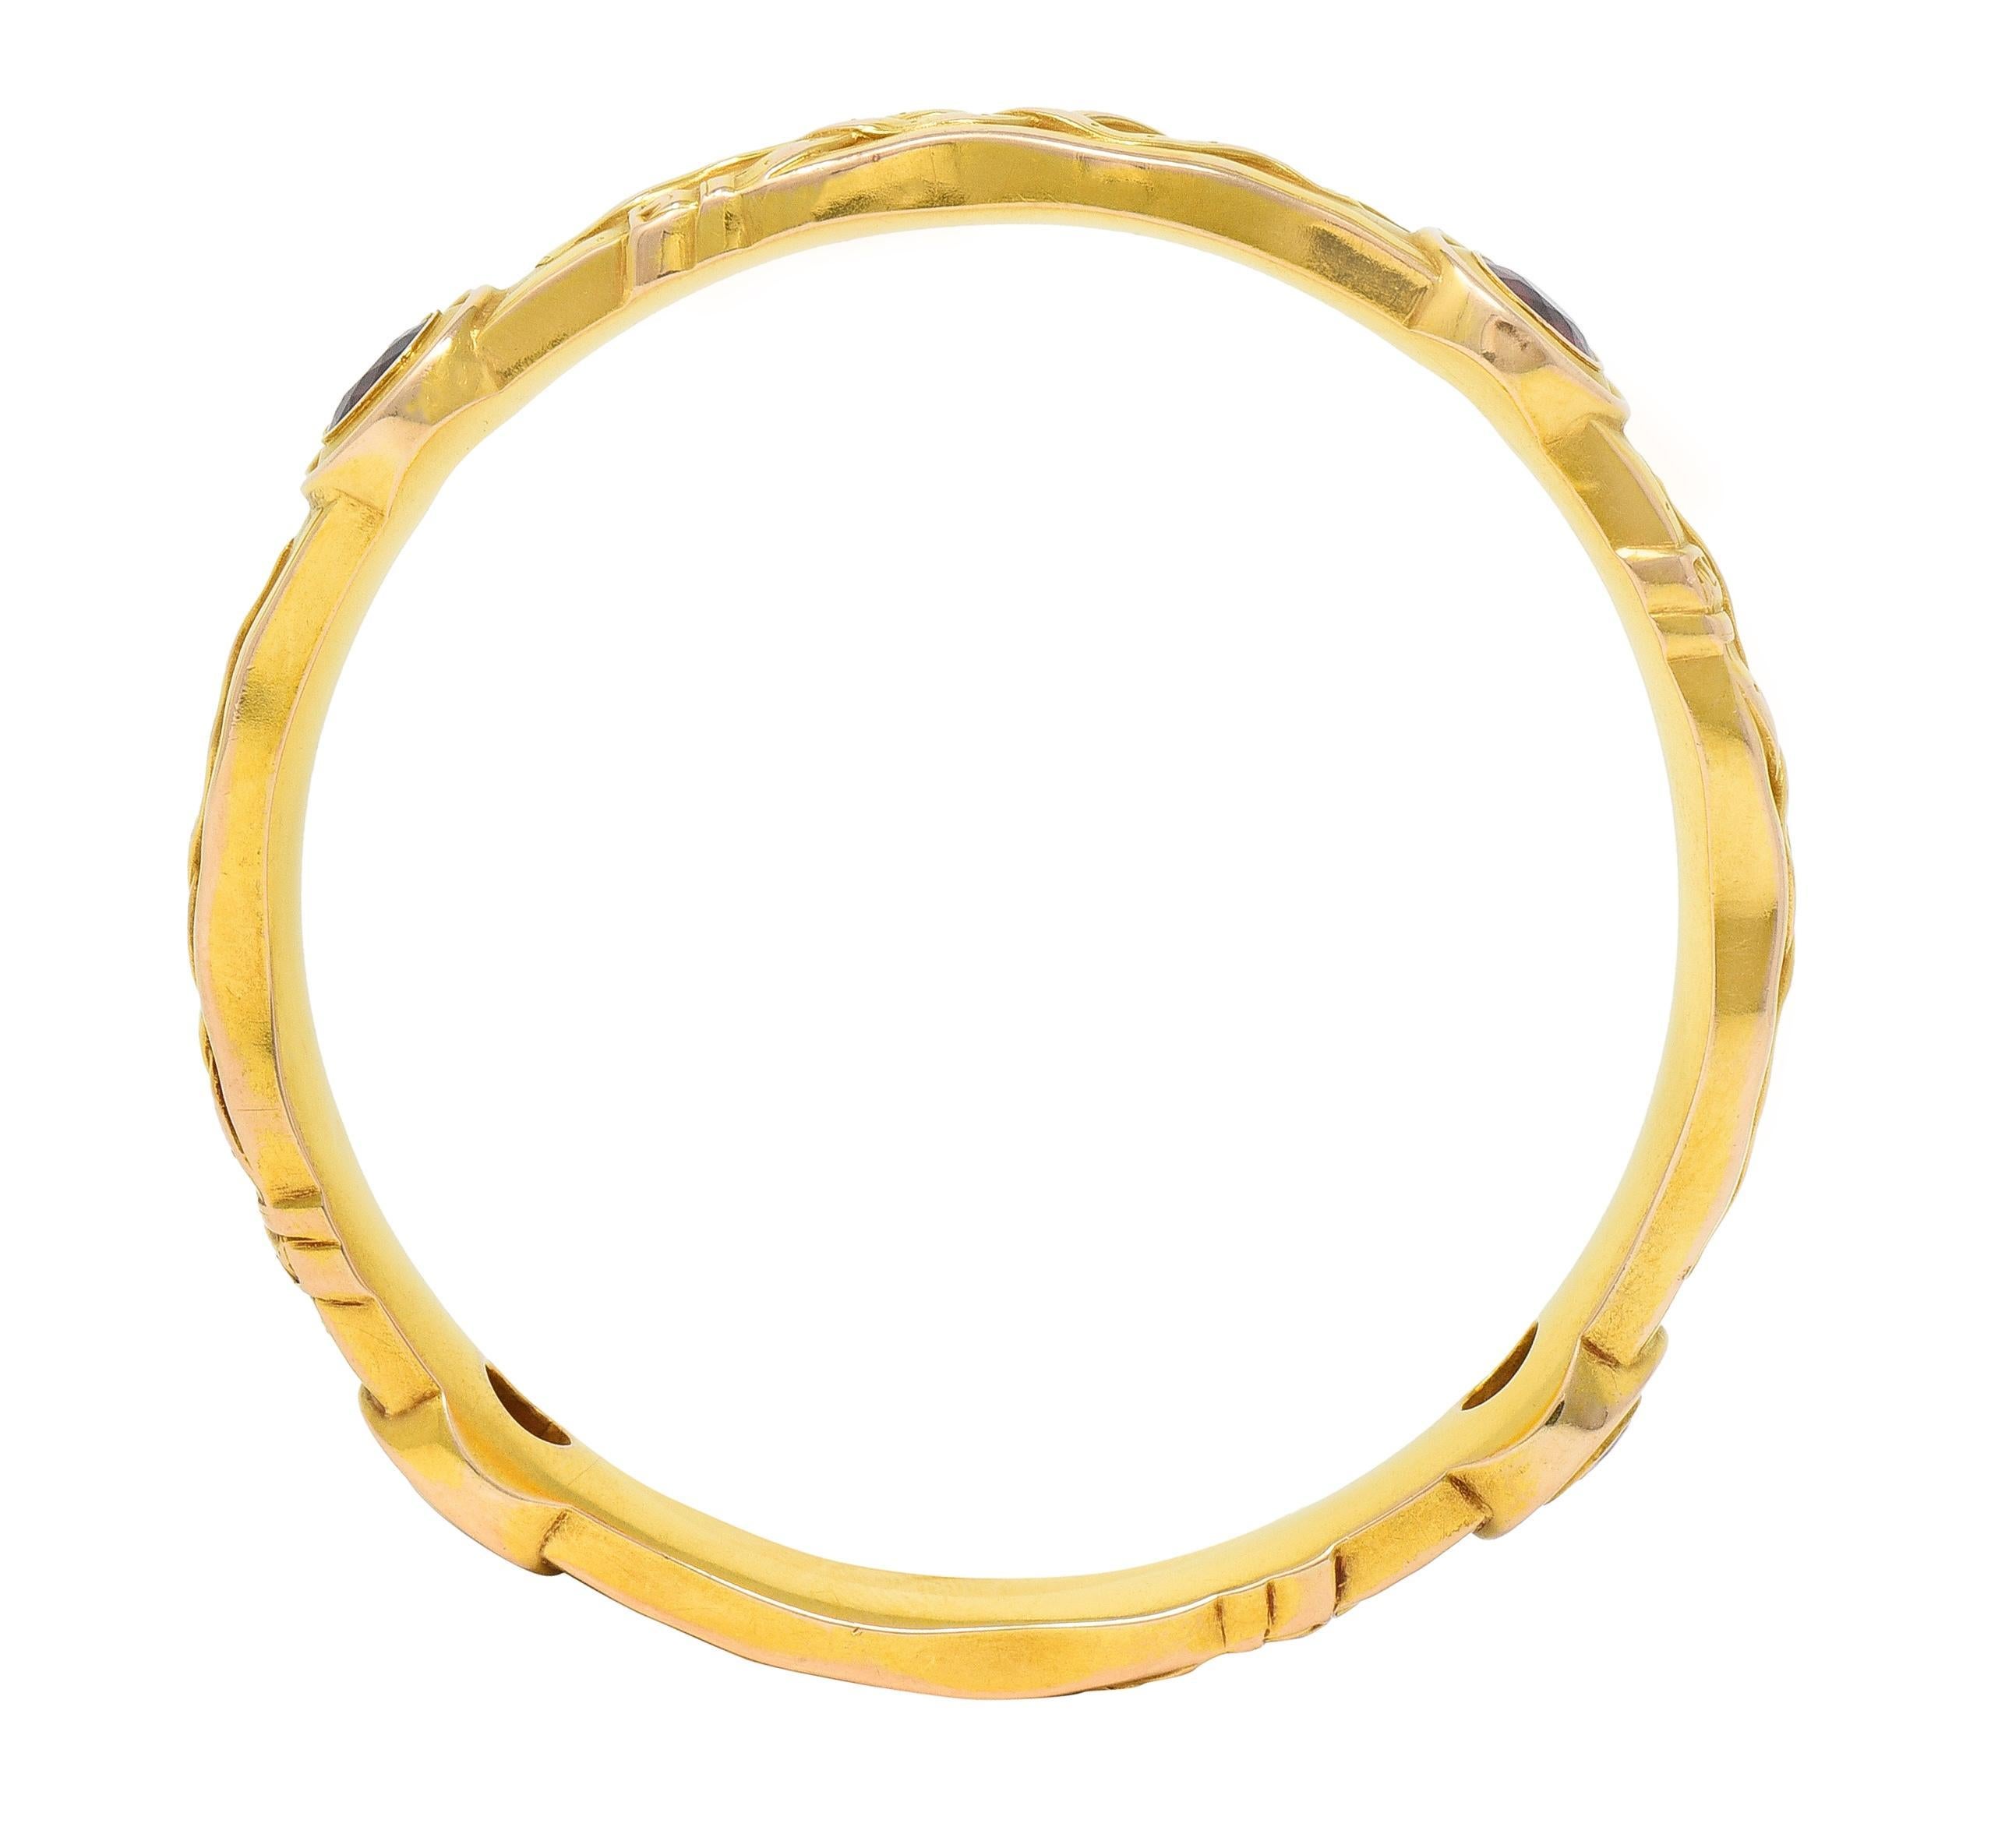 Riker Brothers Art Nouveau Garnet 14 Karat Gold Antique Belt Bangle Bracelet 3